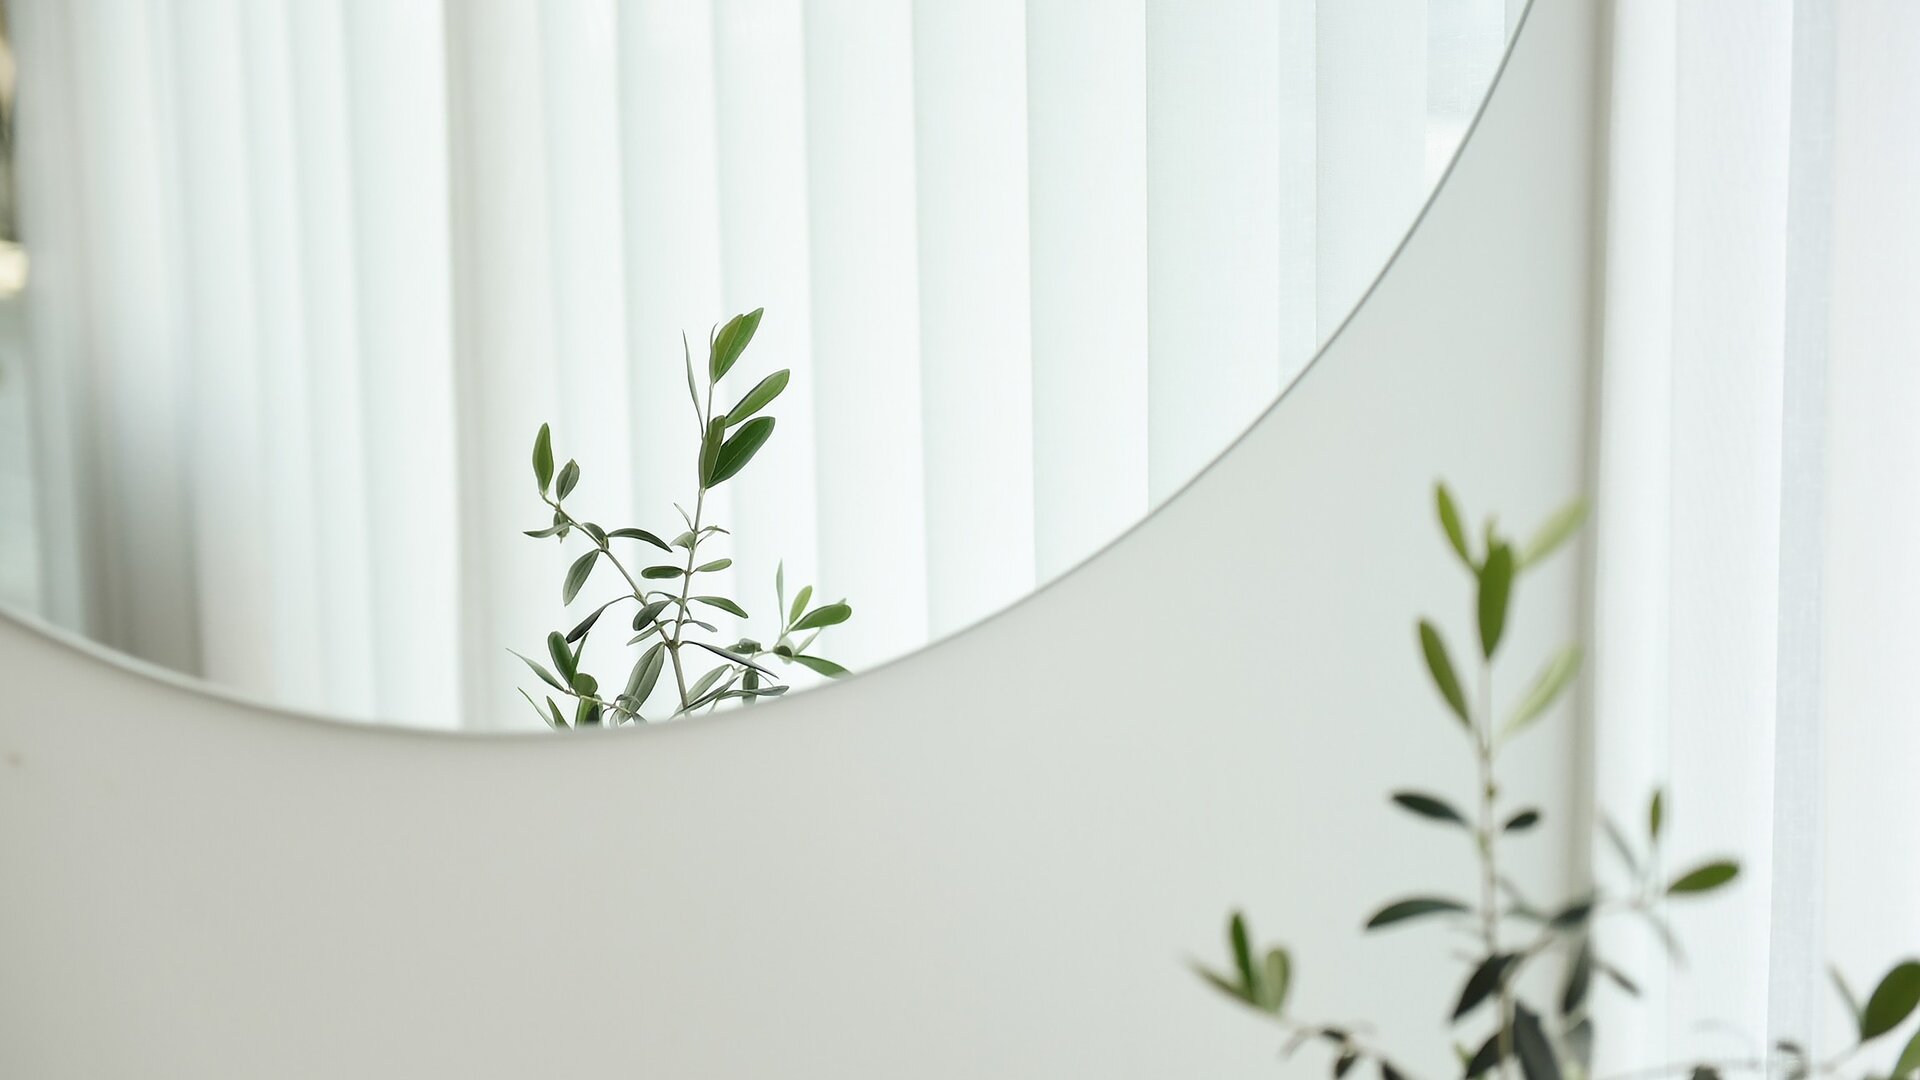 Primo piano della parte inferiore di uno specchio circolare su una parete bianca, che rispecchia le foglie di una pianta.